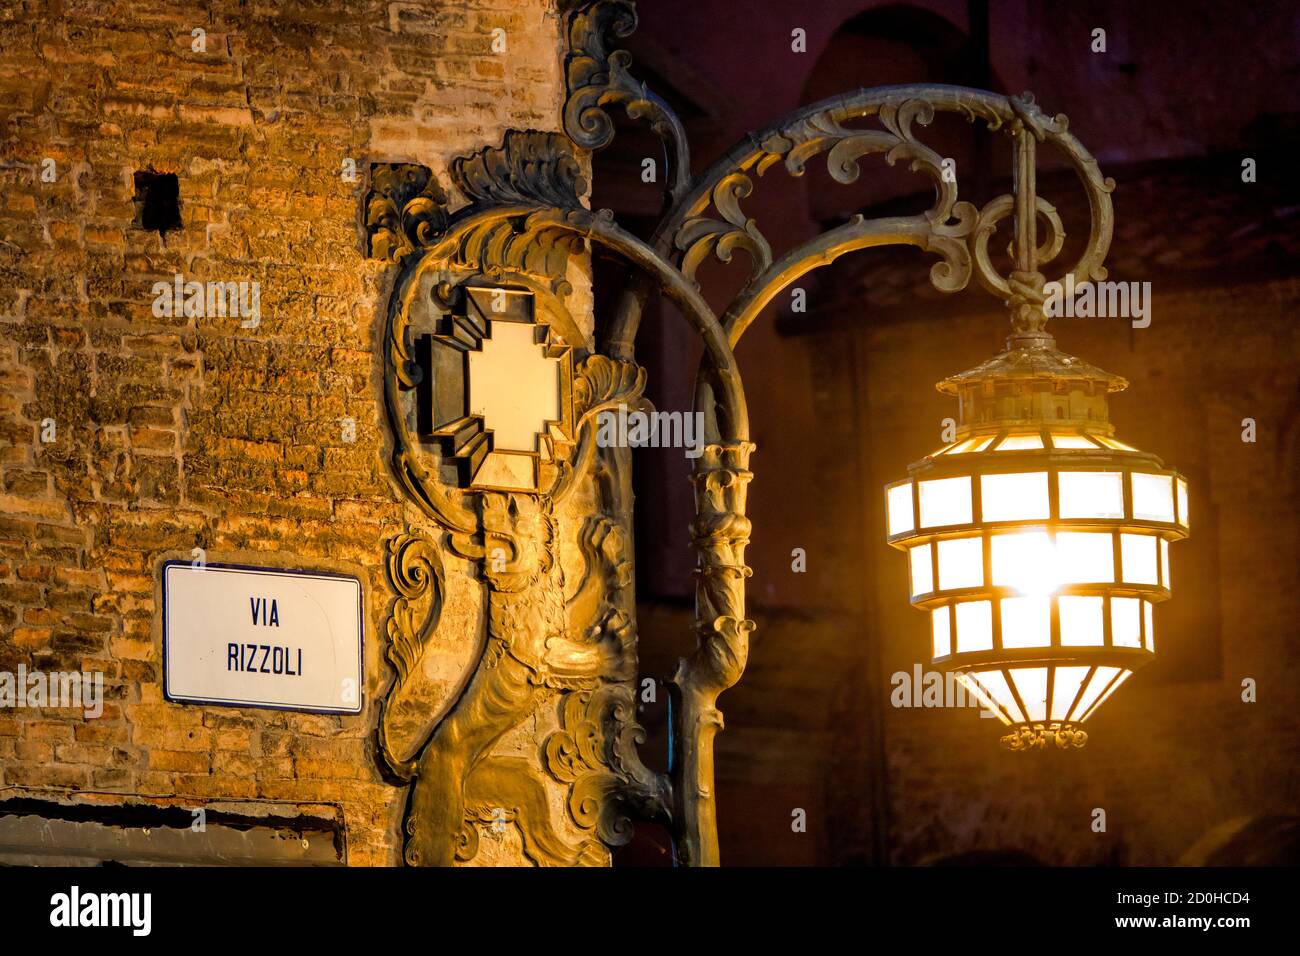 Illuminated street lamp on Palazzo Re Enzo, Bologna, Italy Stock Photo